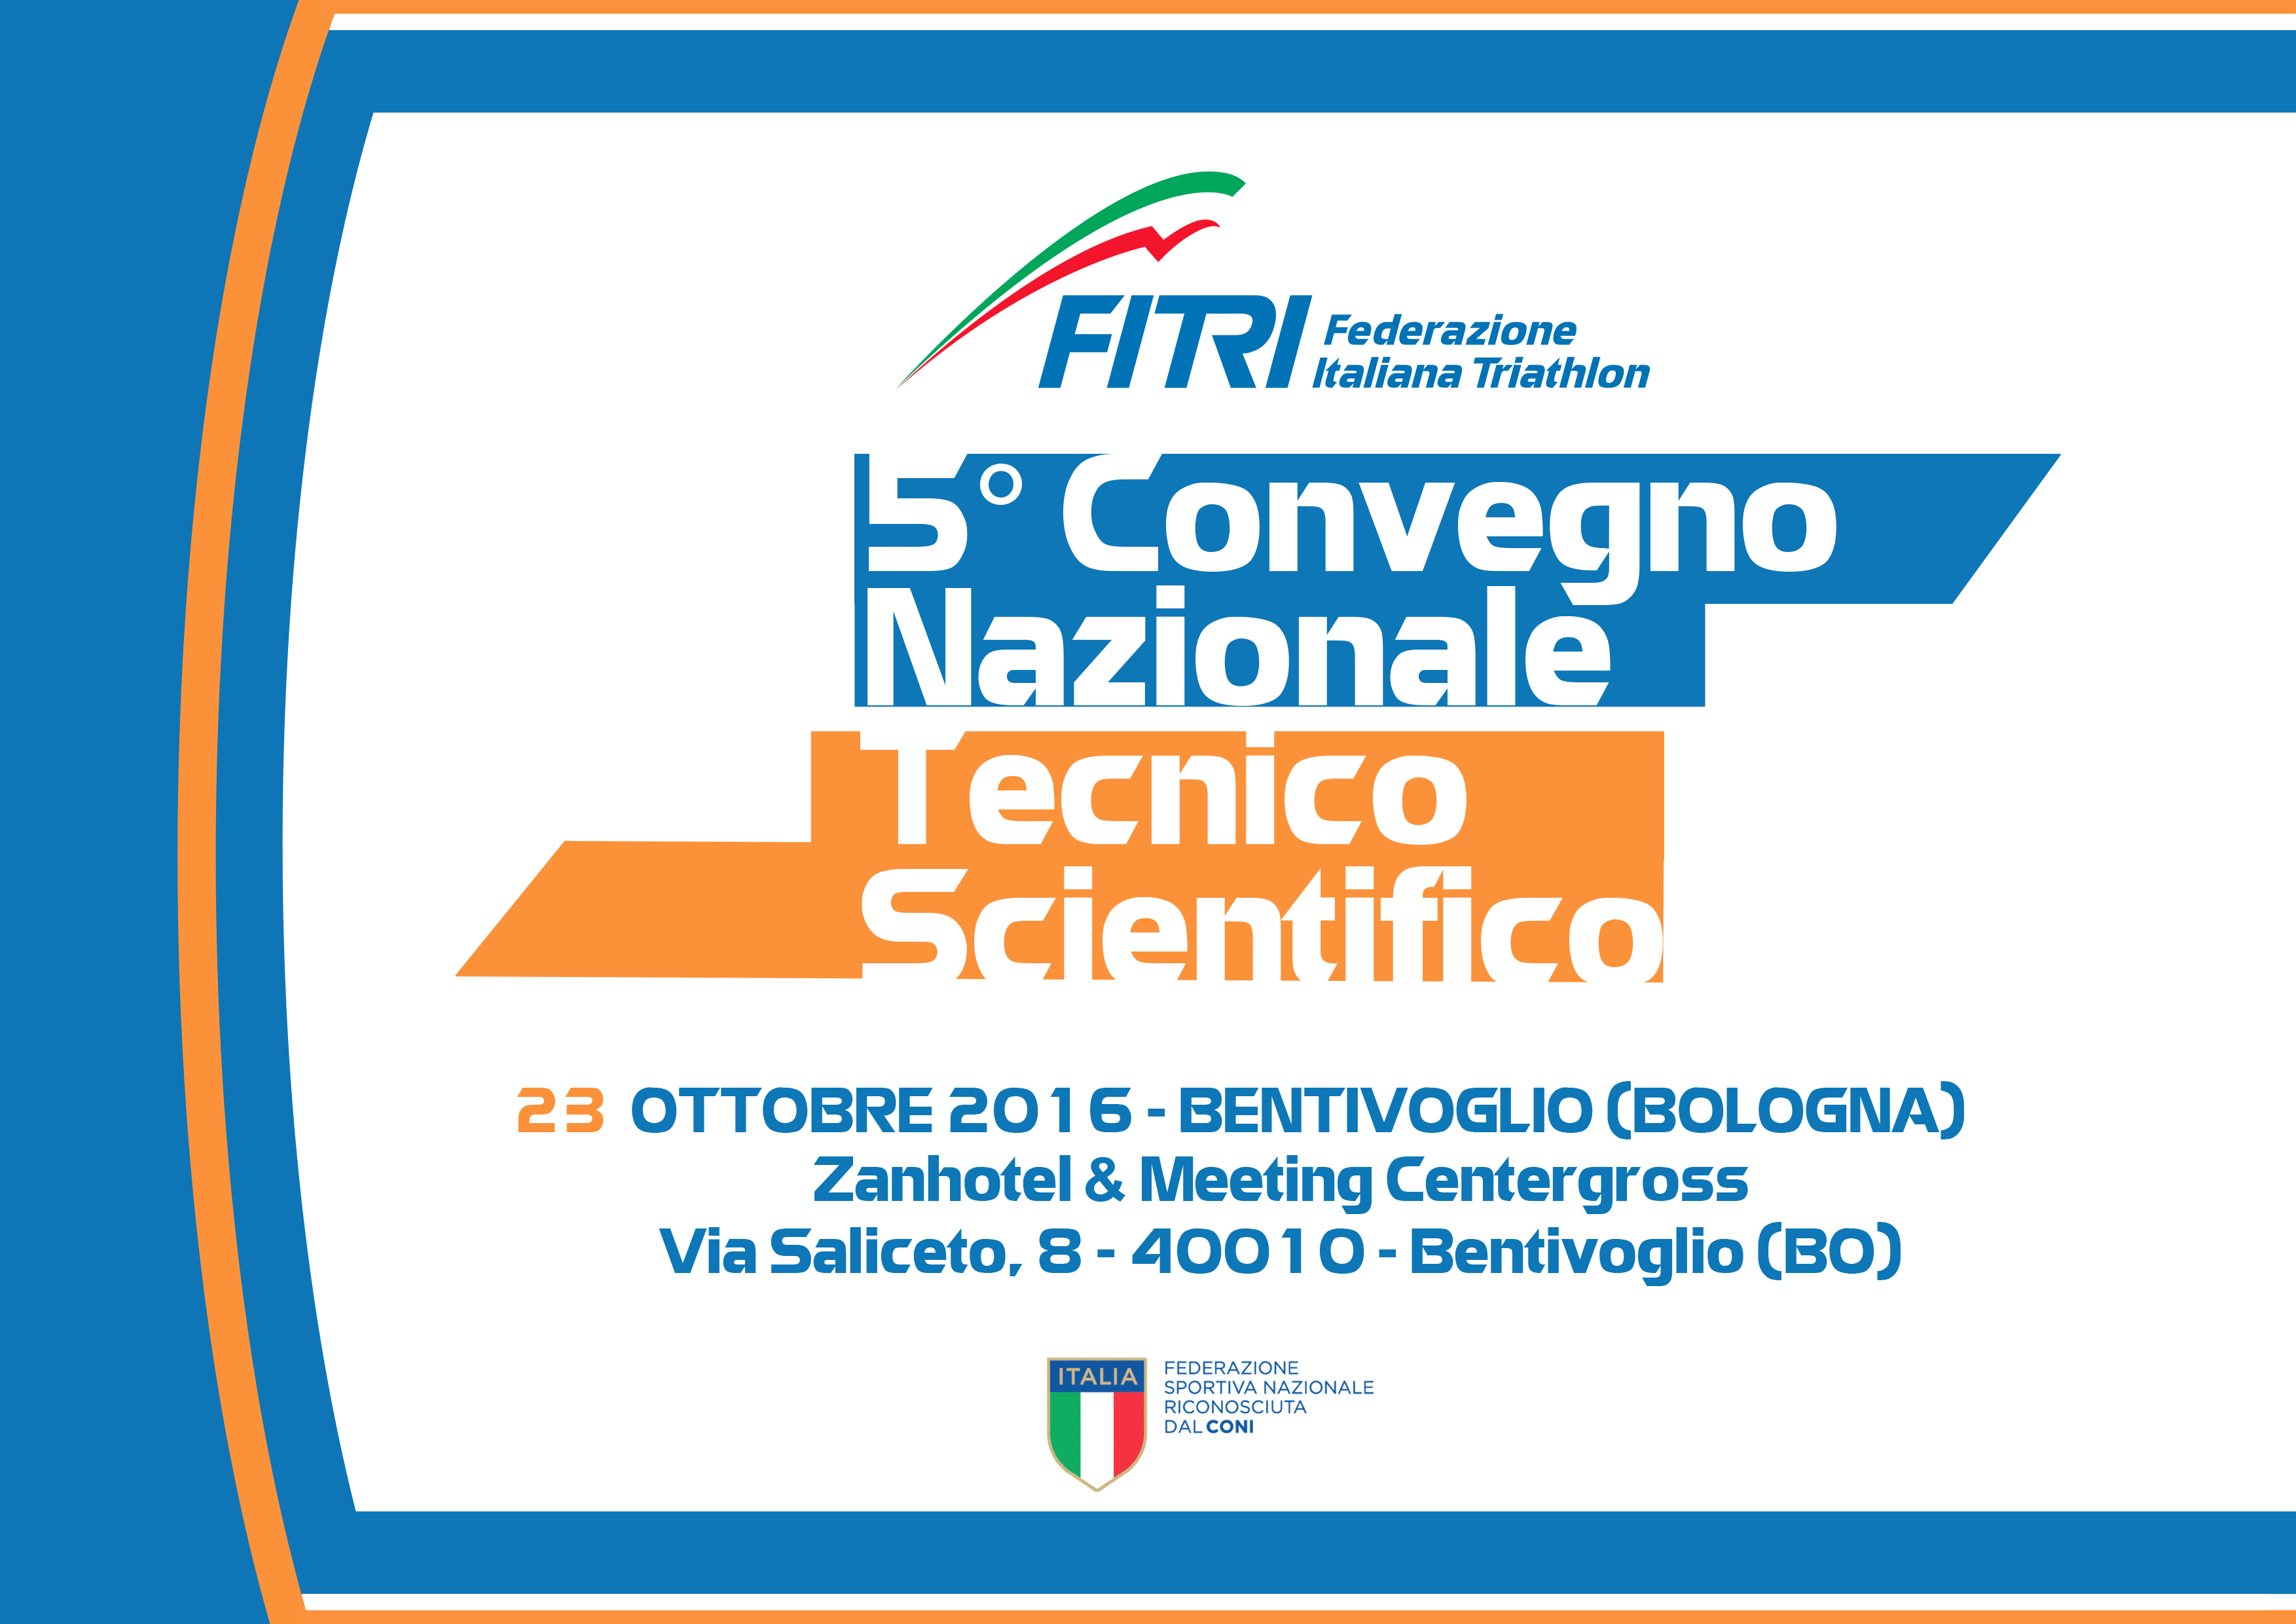 5° Convegno Nazionale FITRI 2016: aperte le iscrizioni online! Ecco il programma. 